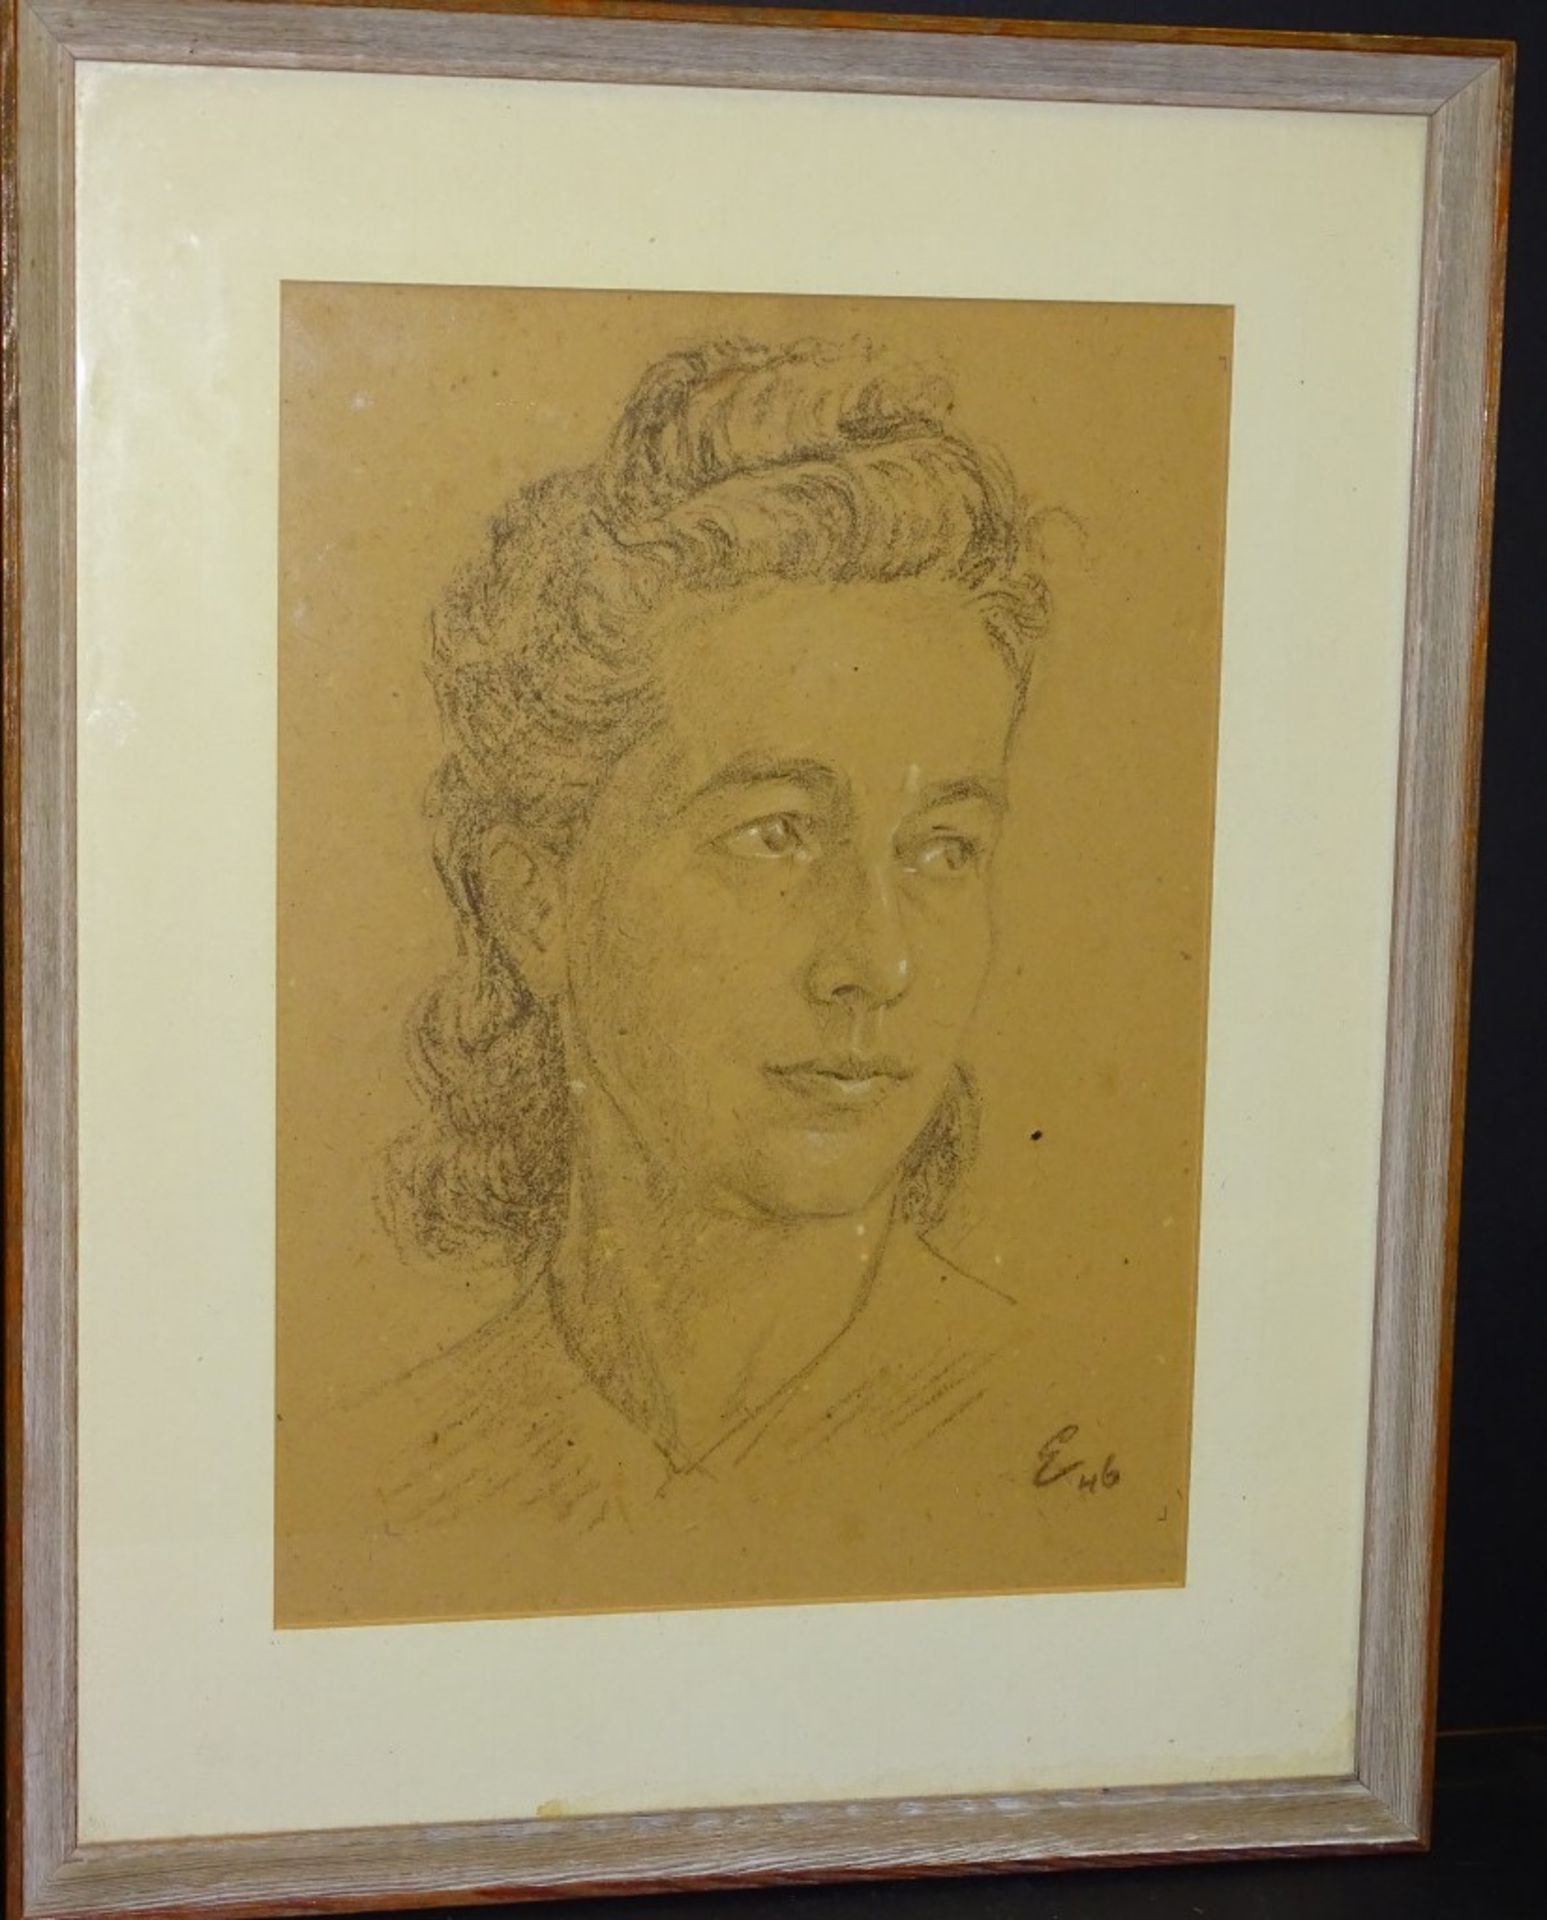 Zeichnung-Frauenportrait,u.r.Monogramm und Datierung (19)46,Gesicht weiss gehöht,ger/Glas,RG 49x39c - Bild 3 aus 6